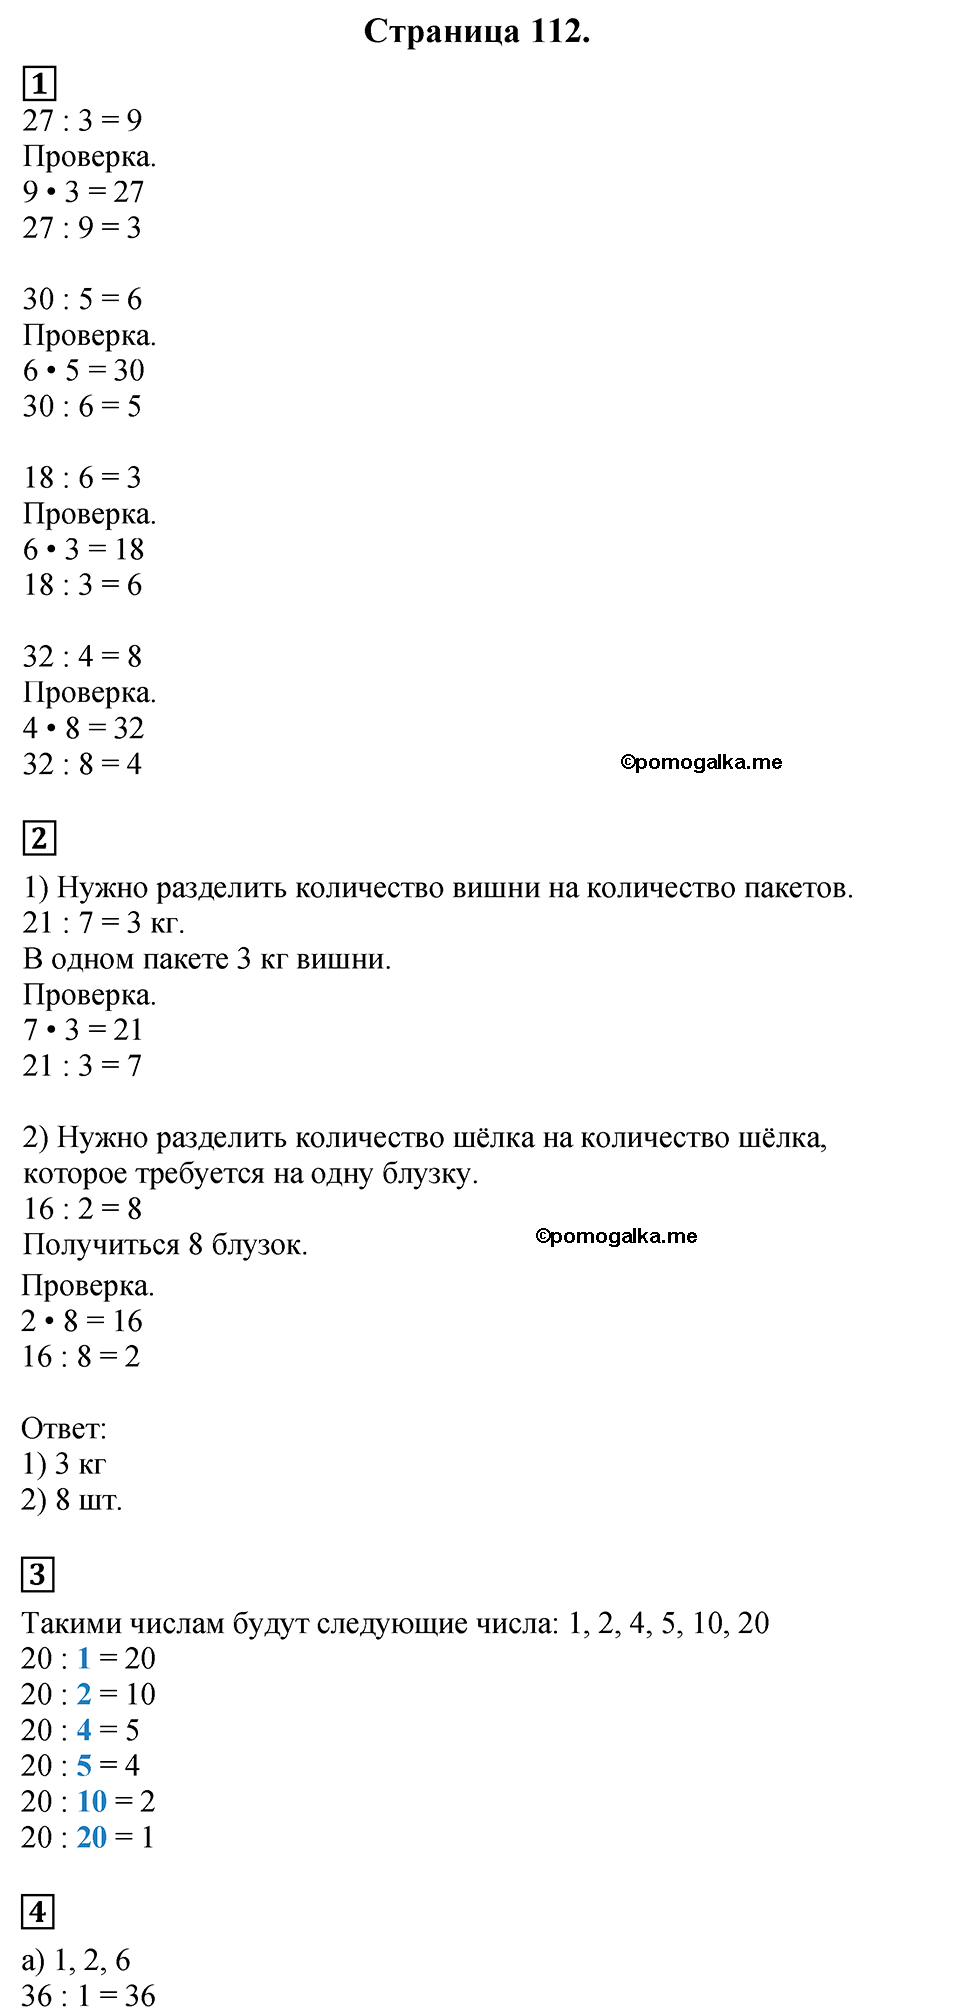 Страница №112 Часть 1 математика 3 класс Дорофеев